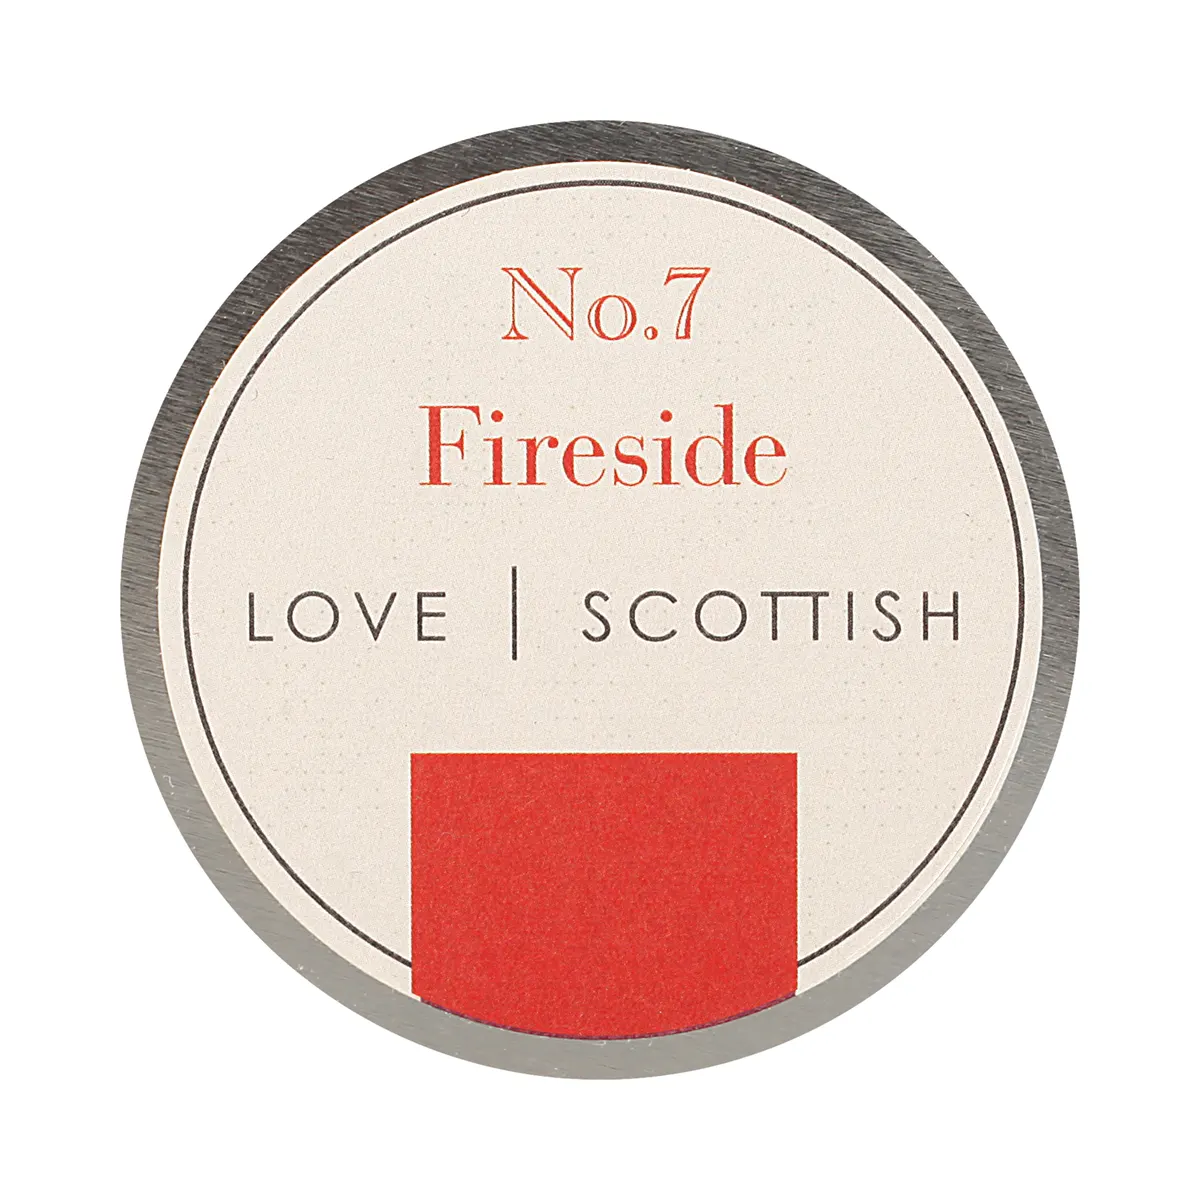 Love Scottish Travel Tin - Fireside - handgefertigte Duftkerze aus Kokoswachs